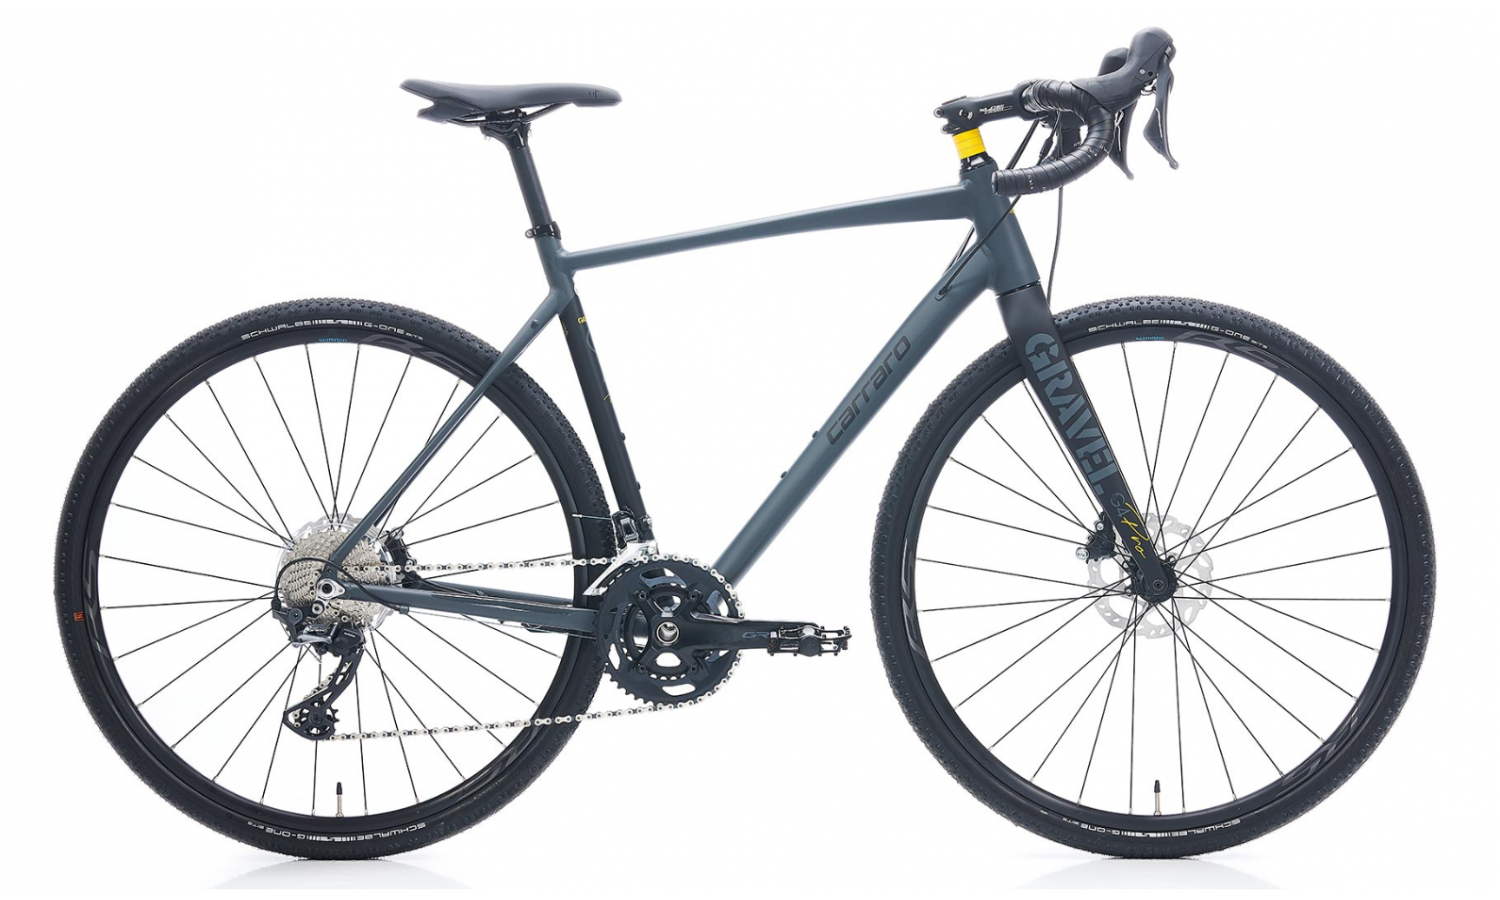 Carraro Gravel G4 Pro 28 Jant Hd Bisikleti (Mat Antrasit-Siyah-Sarı)